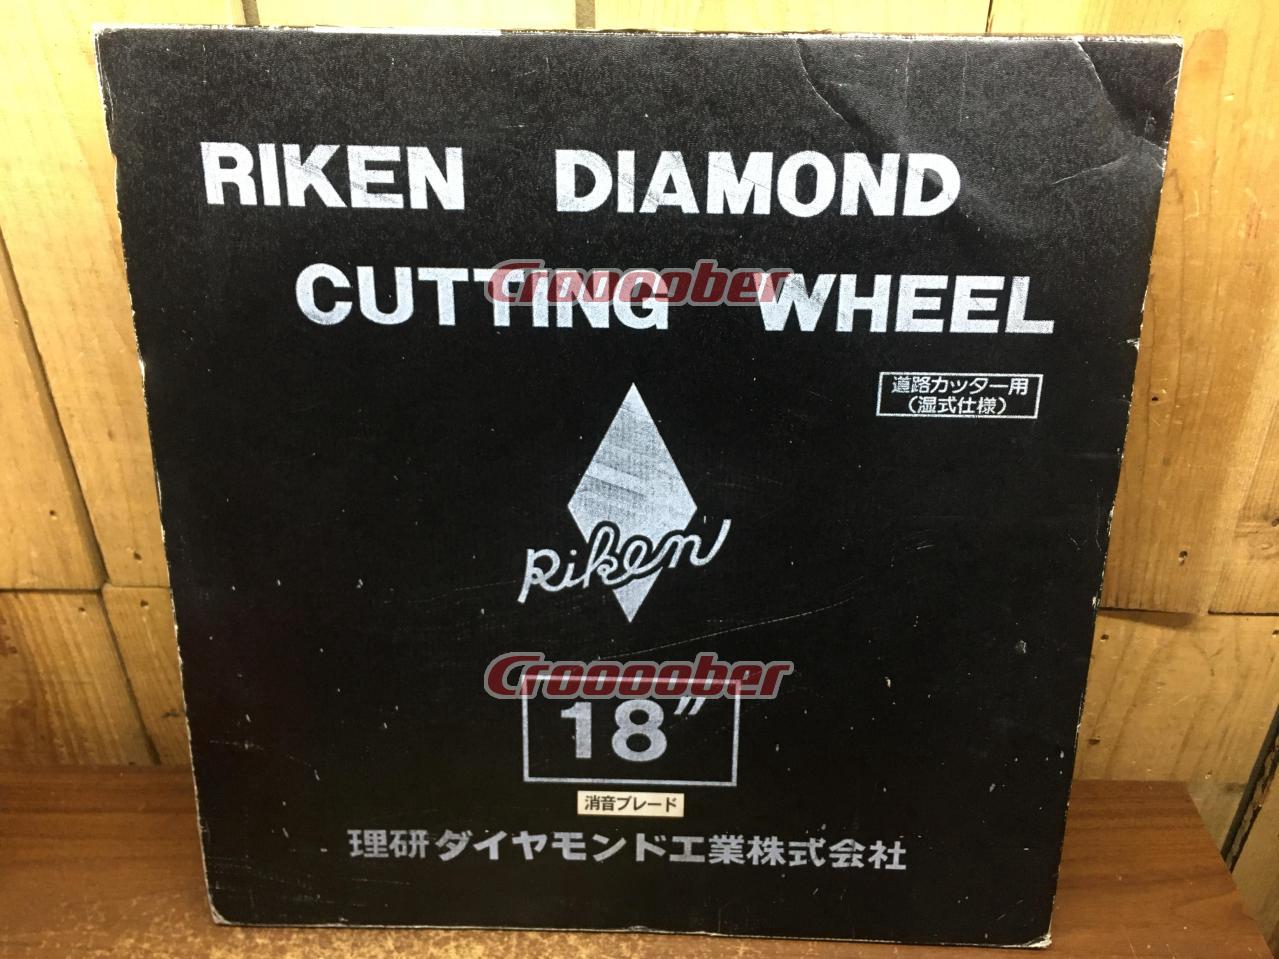 理研ダイヤモンド工業 ダイヤモンドカッティングホイール 18インチ